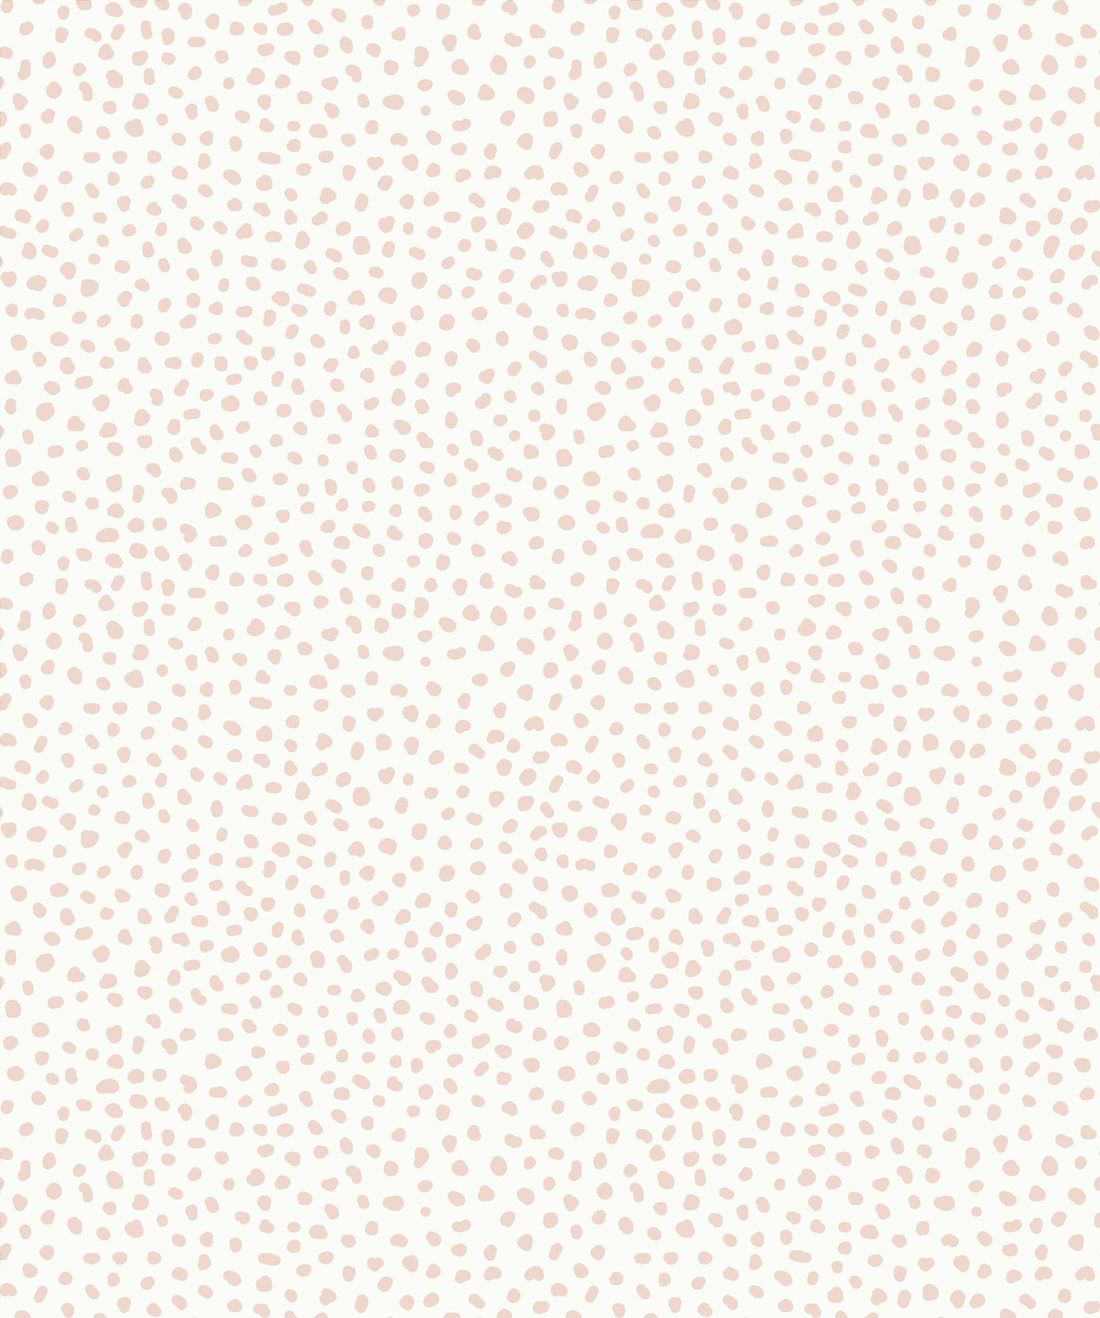 Huddy’s Dots Wallpaper